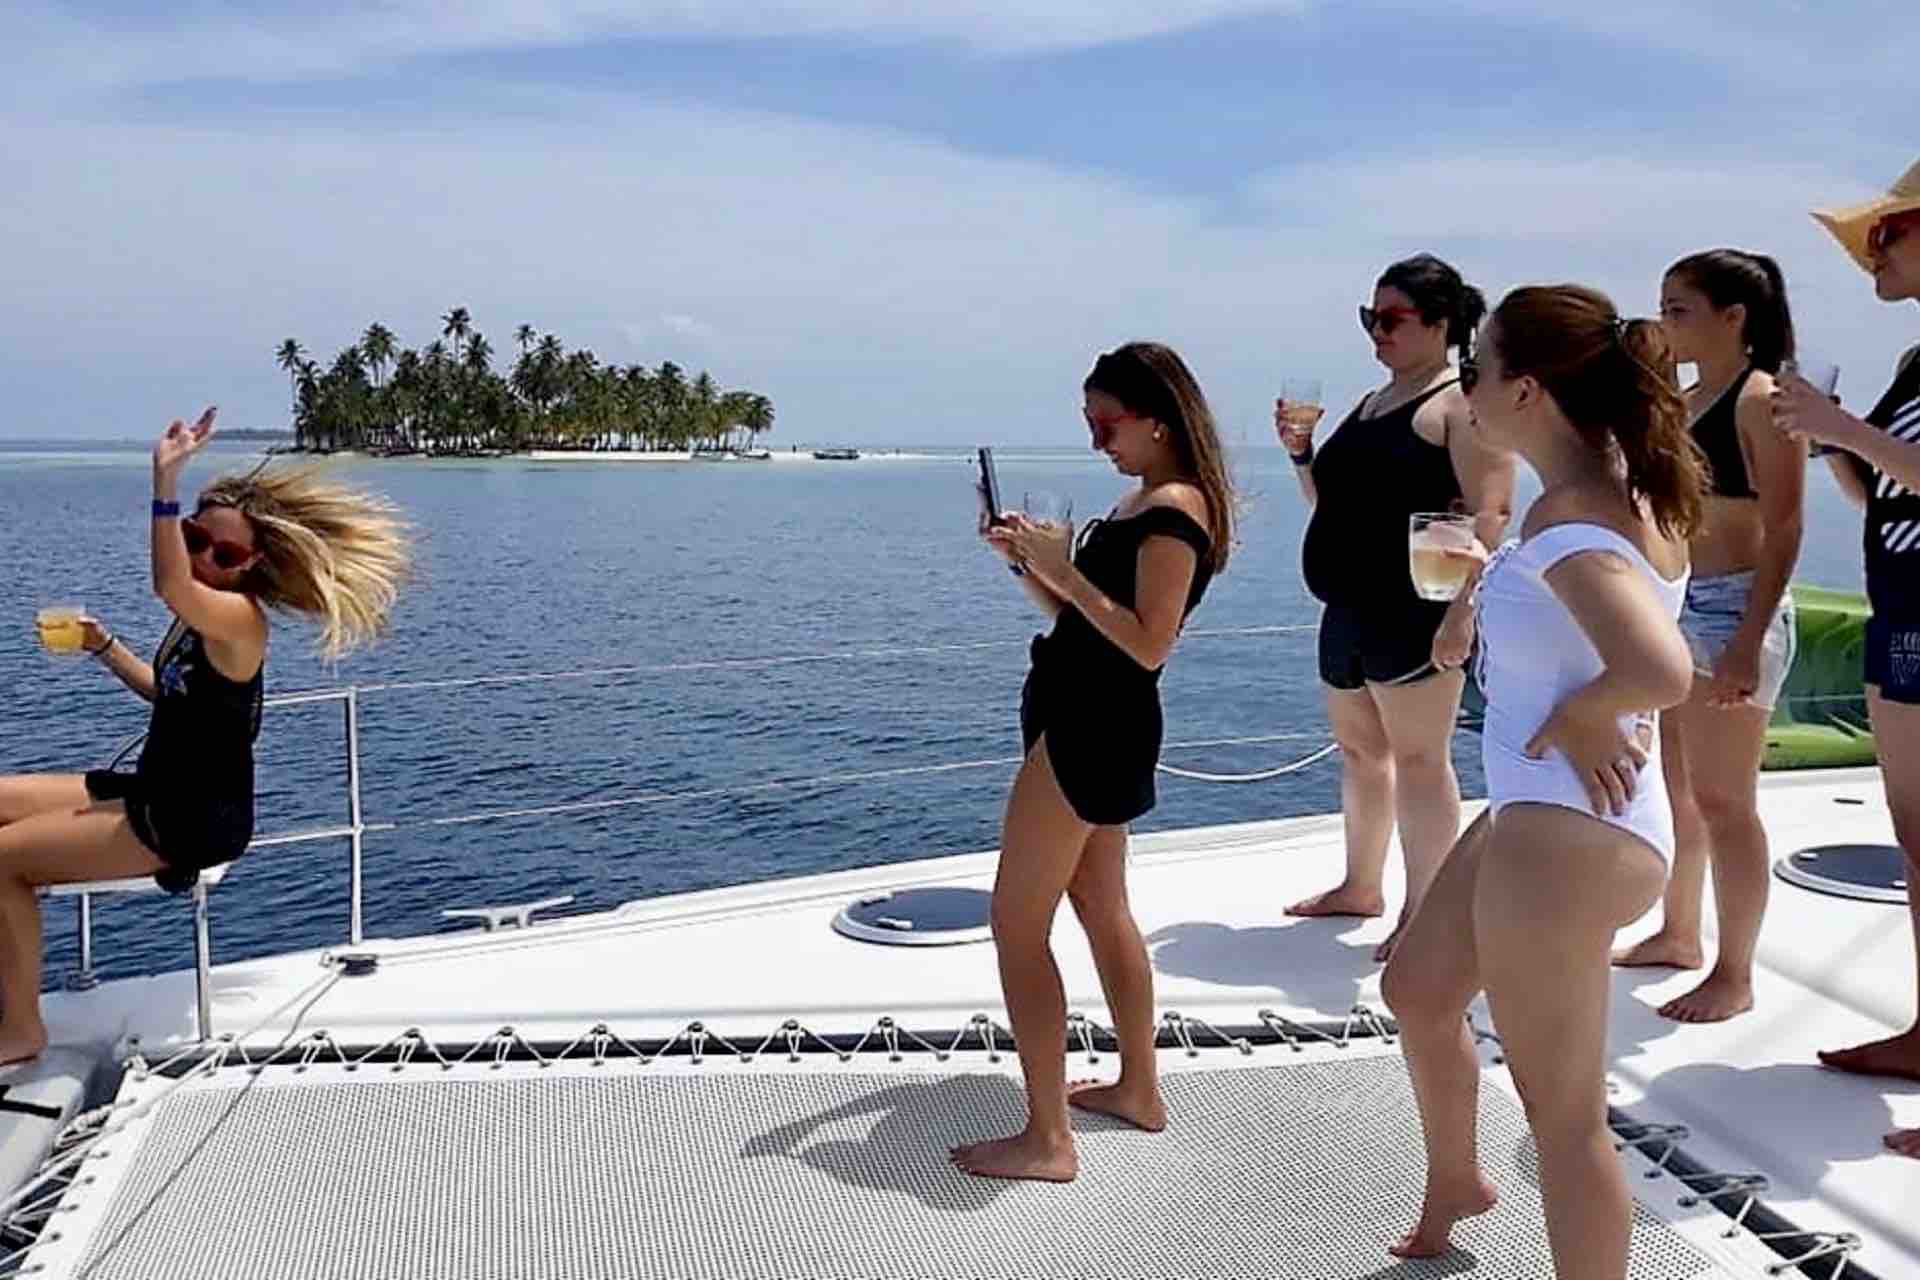 Zenith catamaran guests standing on net